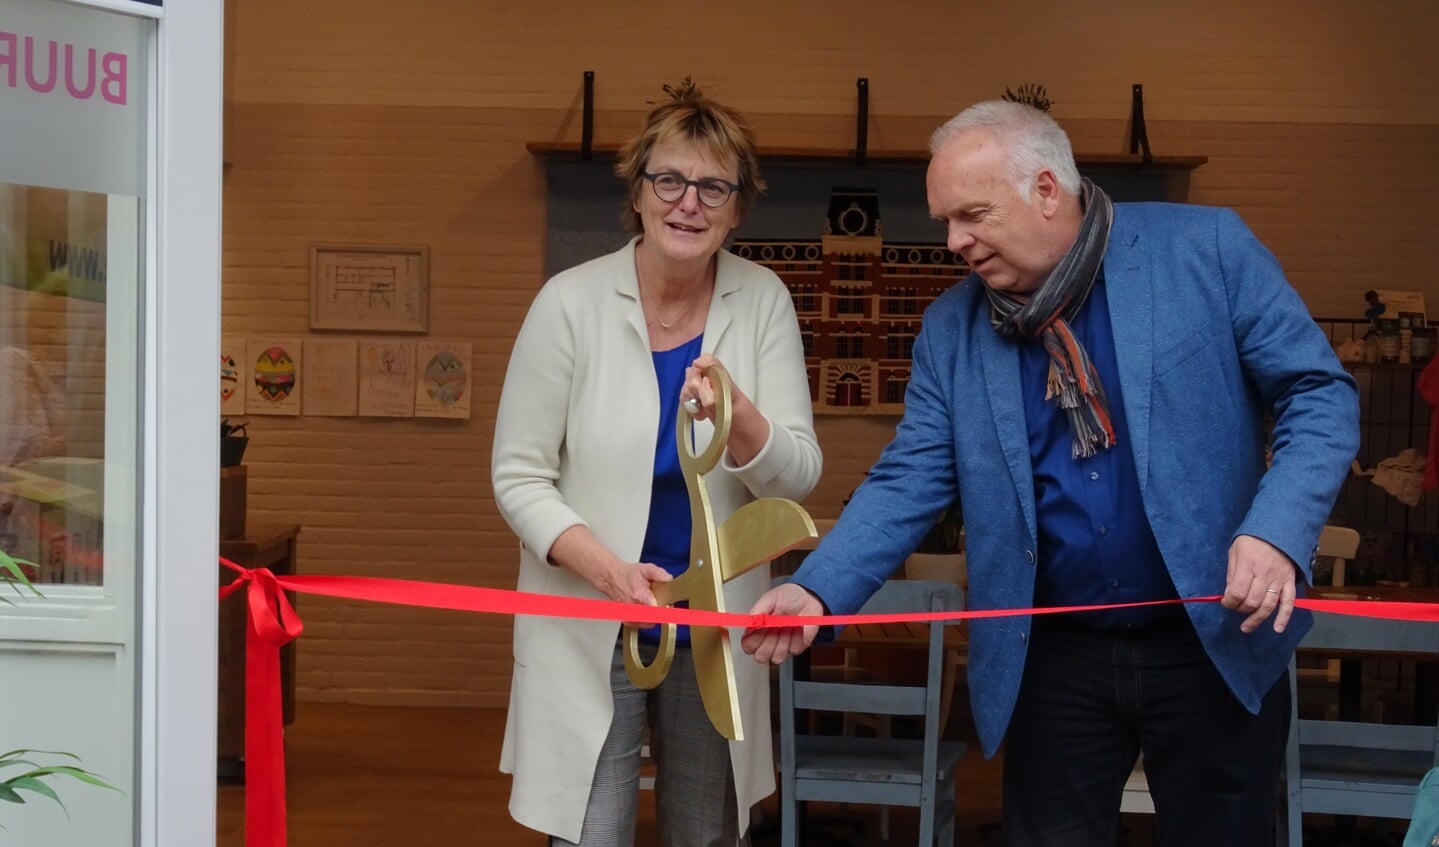 De officiële opening van de koffiehoek met wethouder Marie Thérèse Meijs en SIG-directeur Jan Kroft.